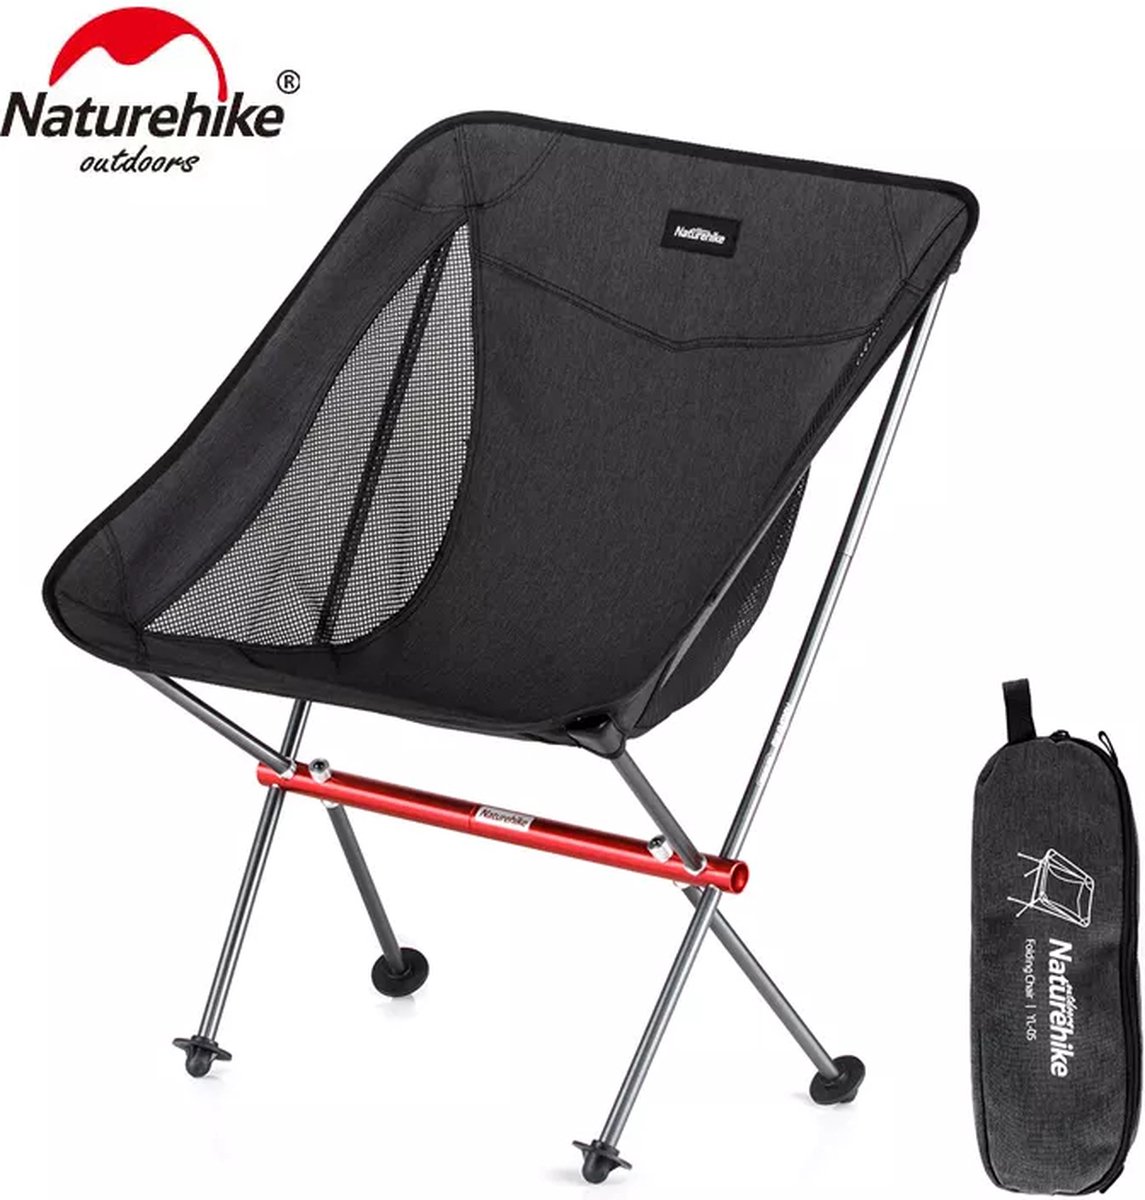 Naturehike® Campingstoel - 600D Cation - Opvouwbaar & Inklapbaar - Lichtgewicht - Vouwstoel - Outdoor stoel - Hiking & Wandelen